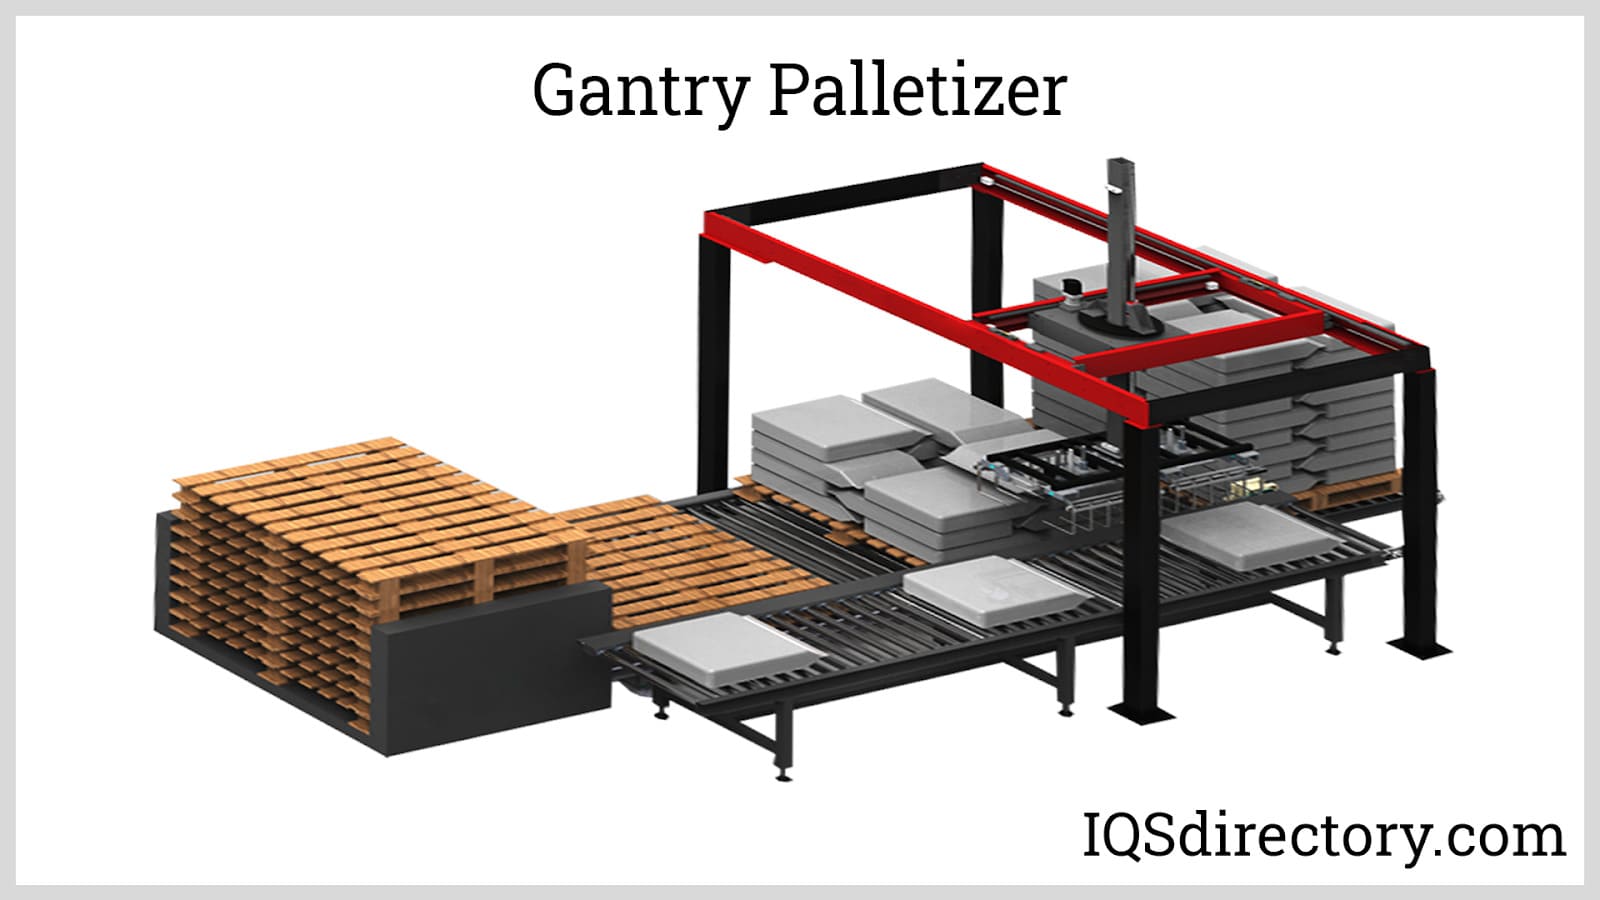 Gantry Palletizer